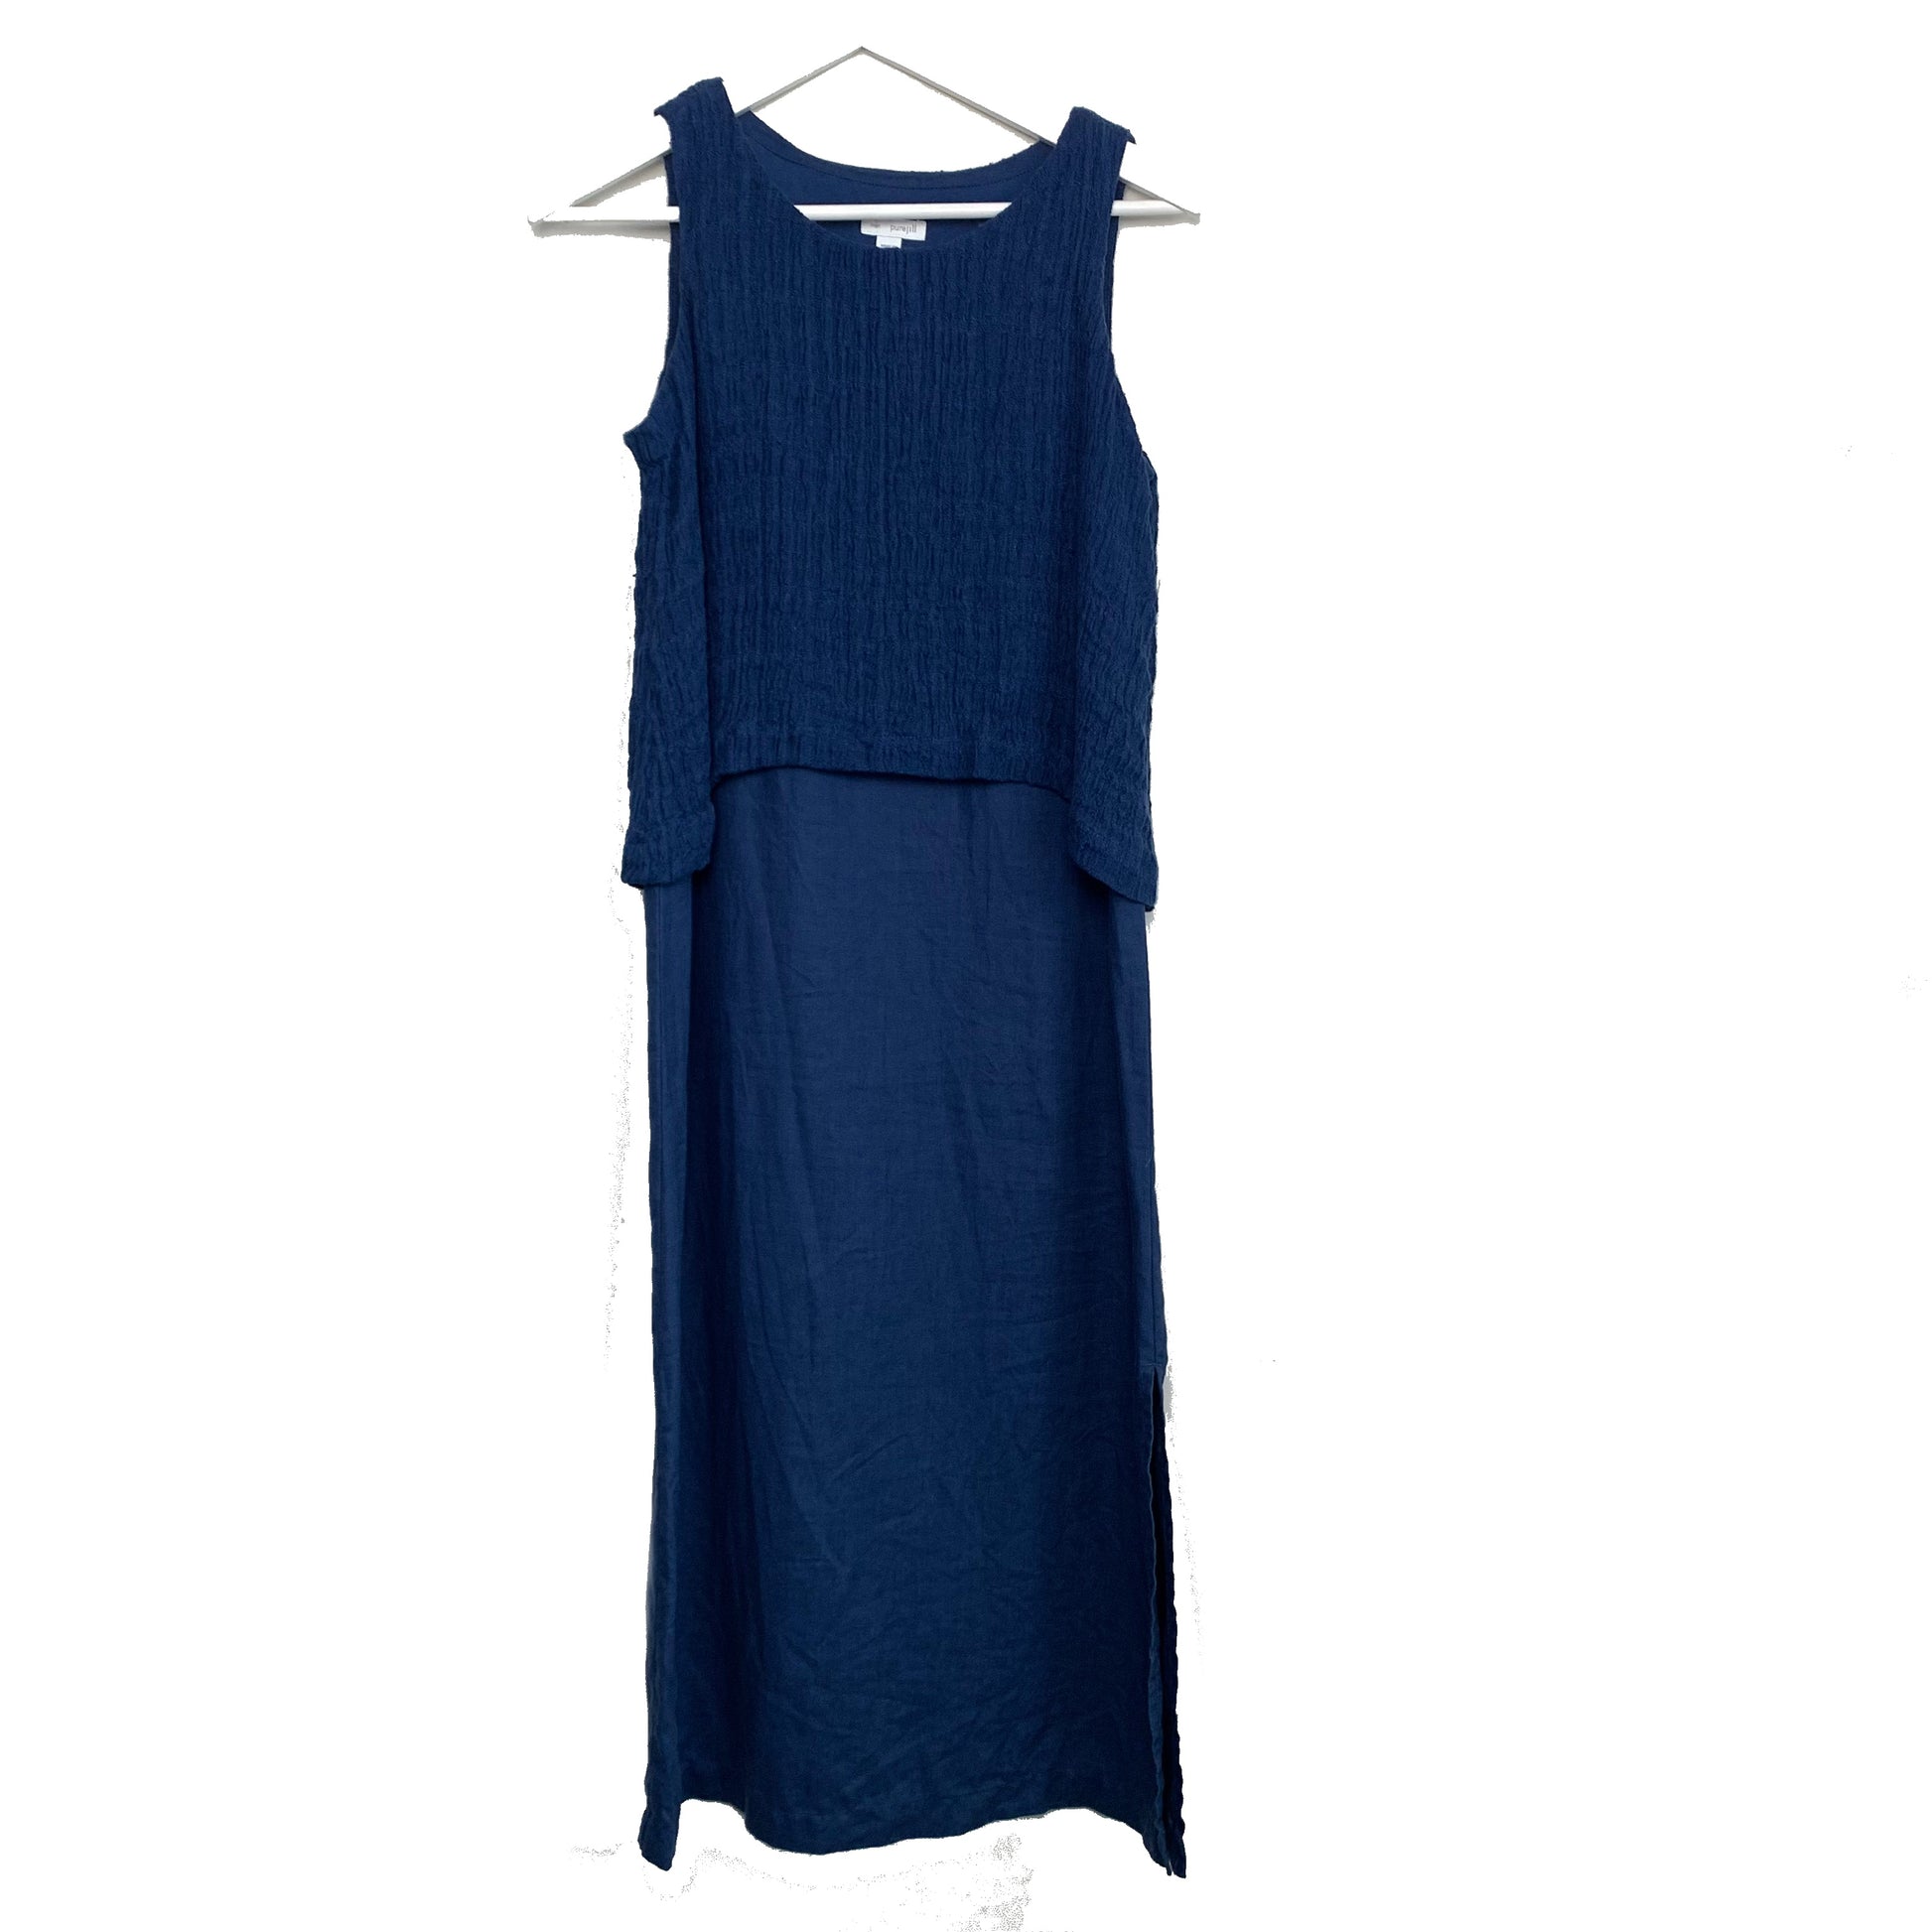 J.Jill Love Linen Blue Sleeveless Midi Dress with Knit Top XS Petite –  Lilac Lawson